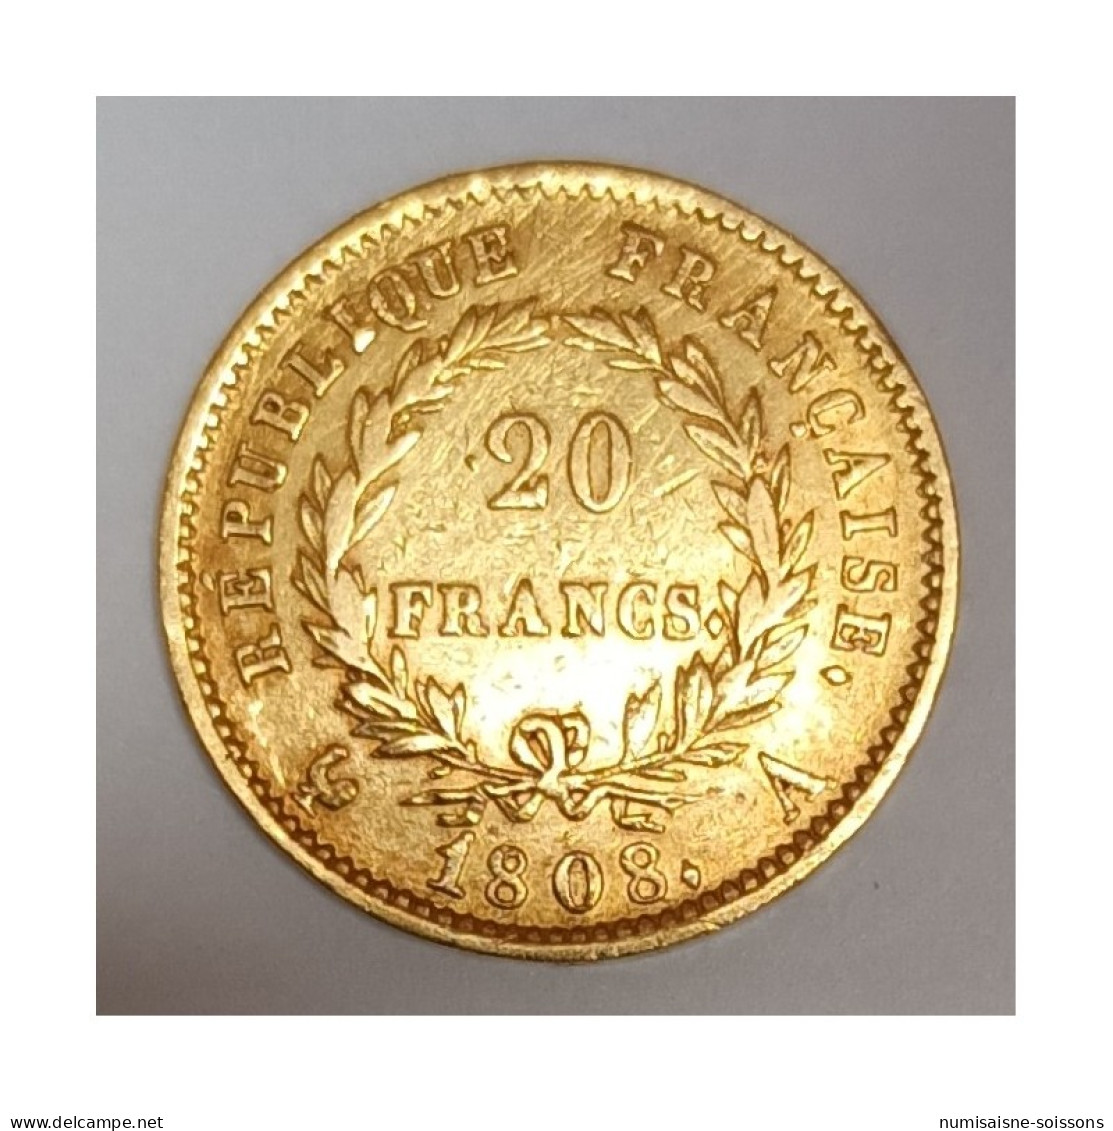 GADOURY 1025 - 20 FRANCS OR 1808 A PARIS - TYPE NAPOLÉON 1ER - KM 687 - TB+ - 20 Francs (gold)